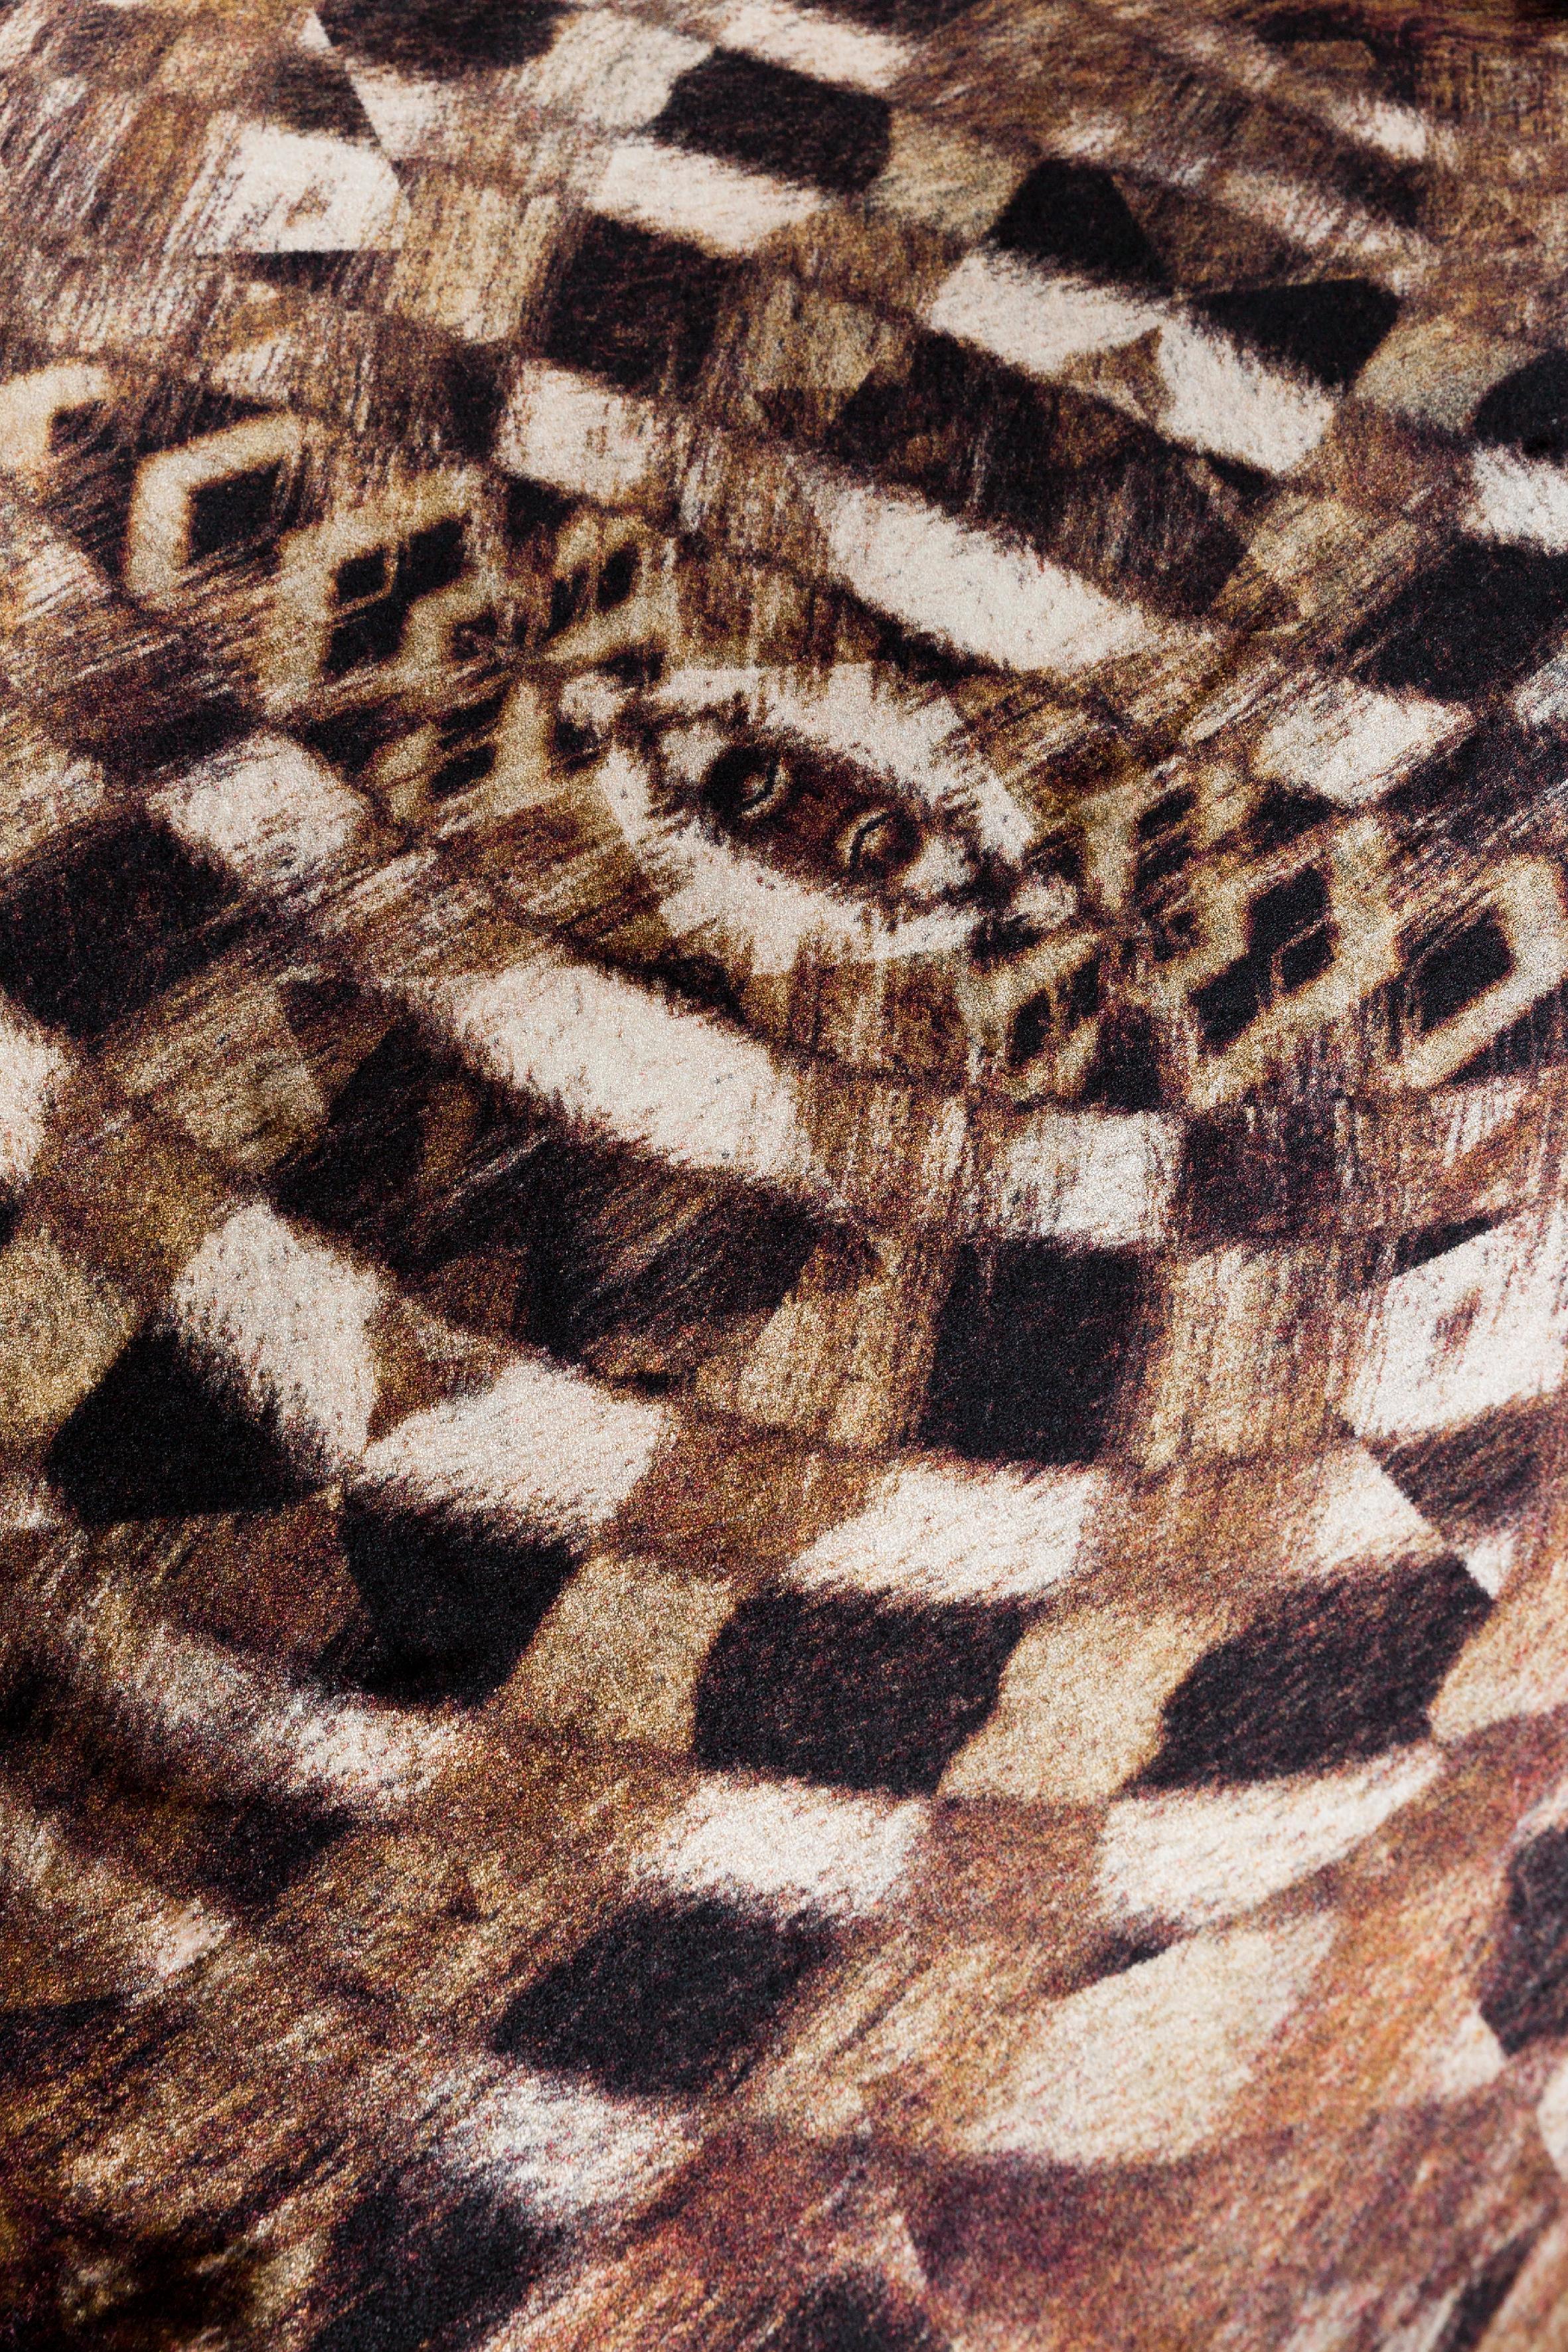 Moooi große ausgestorbene tiere aristo quagga teppich aus Polyamid mit niedrigem flor.

